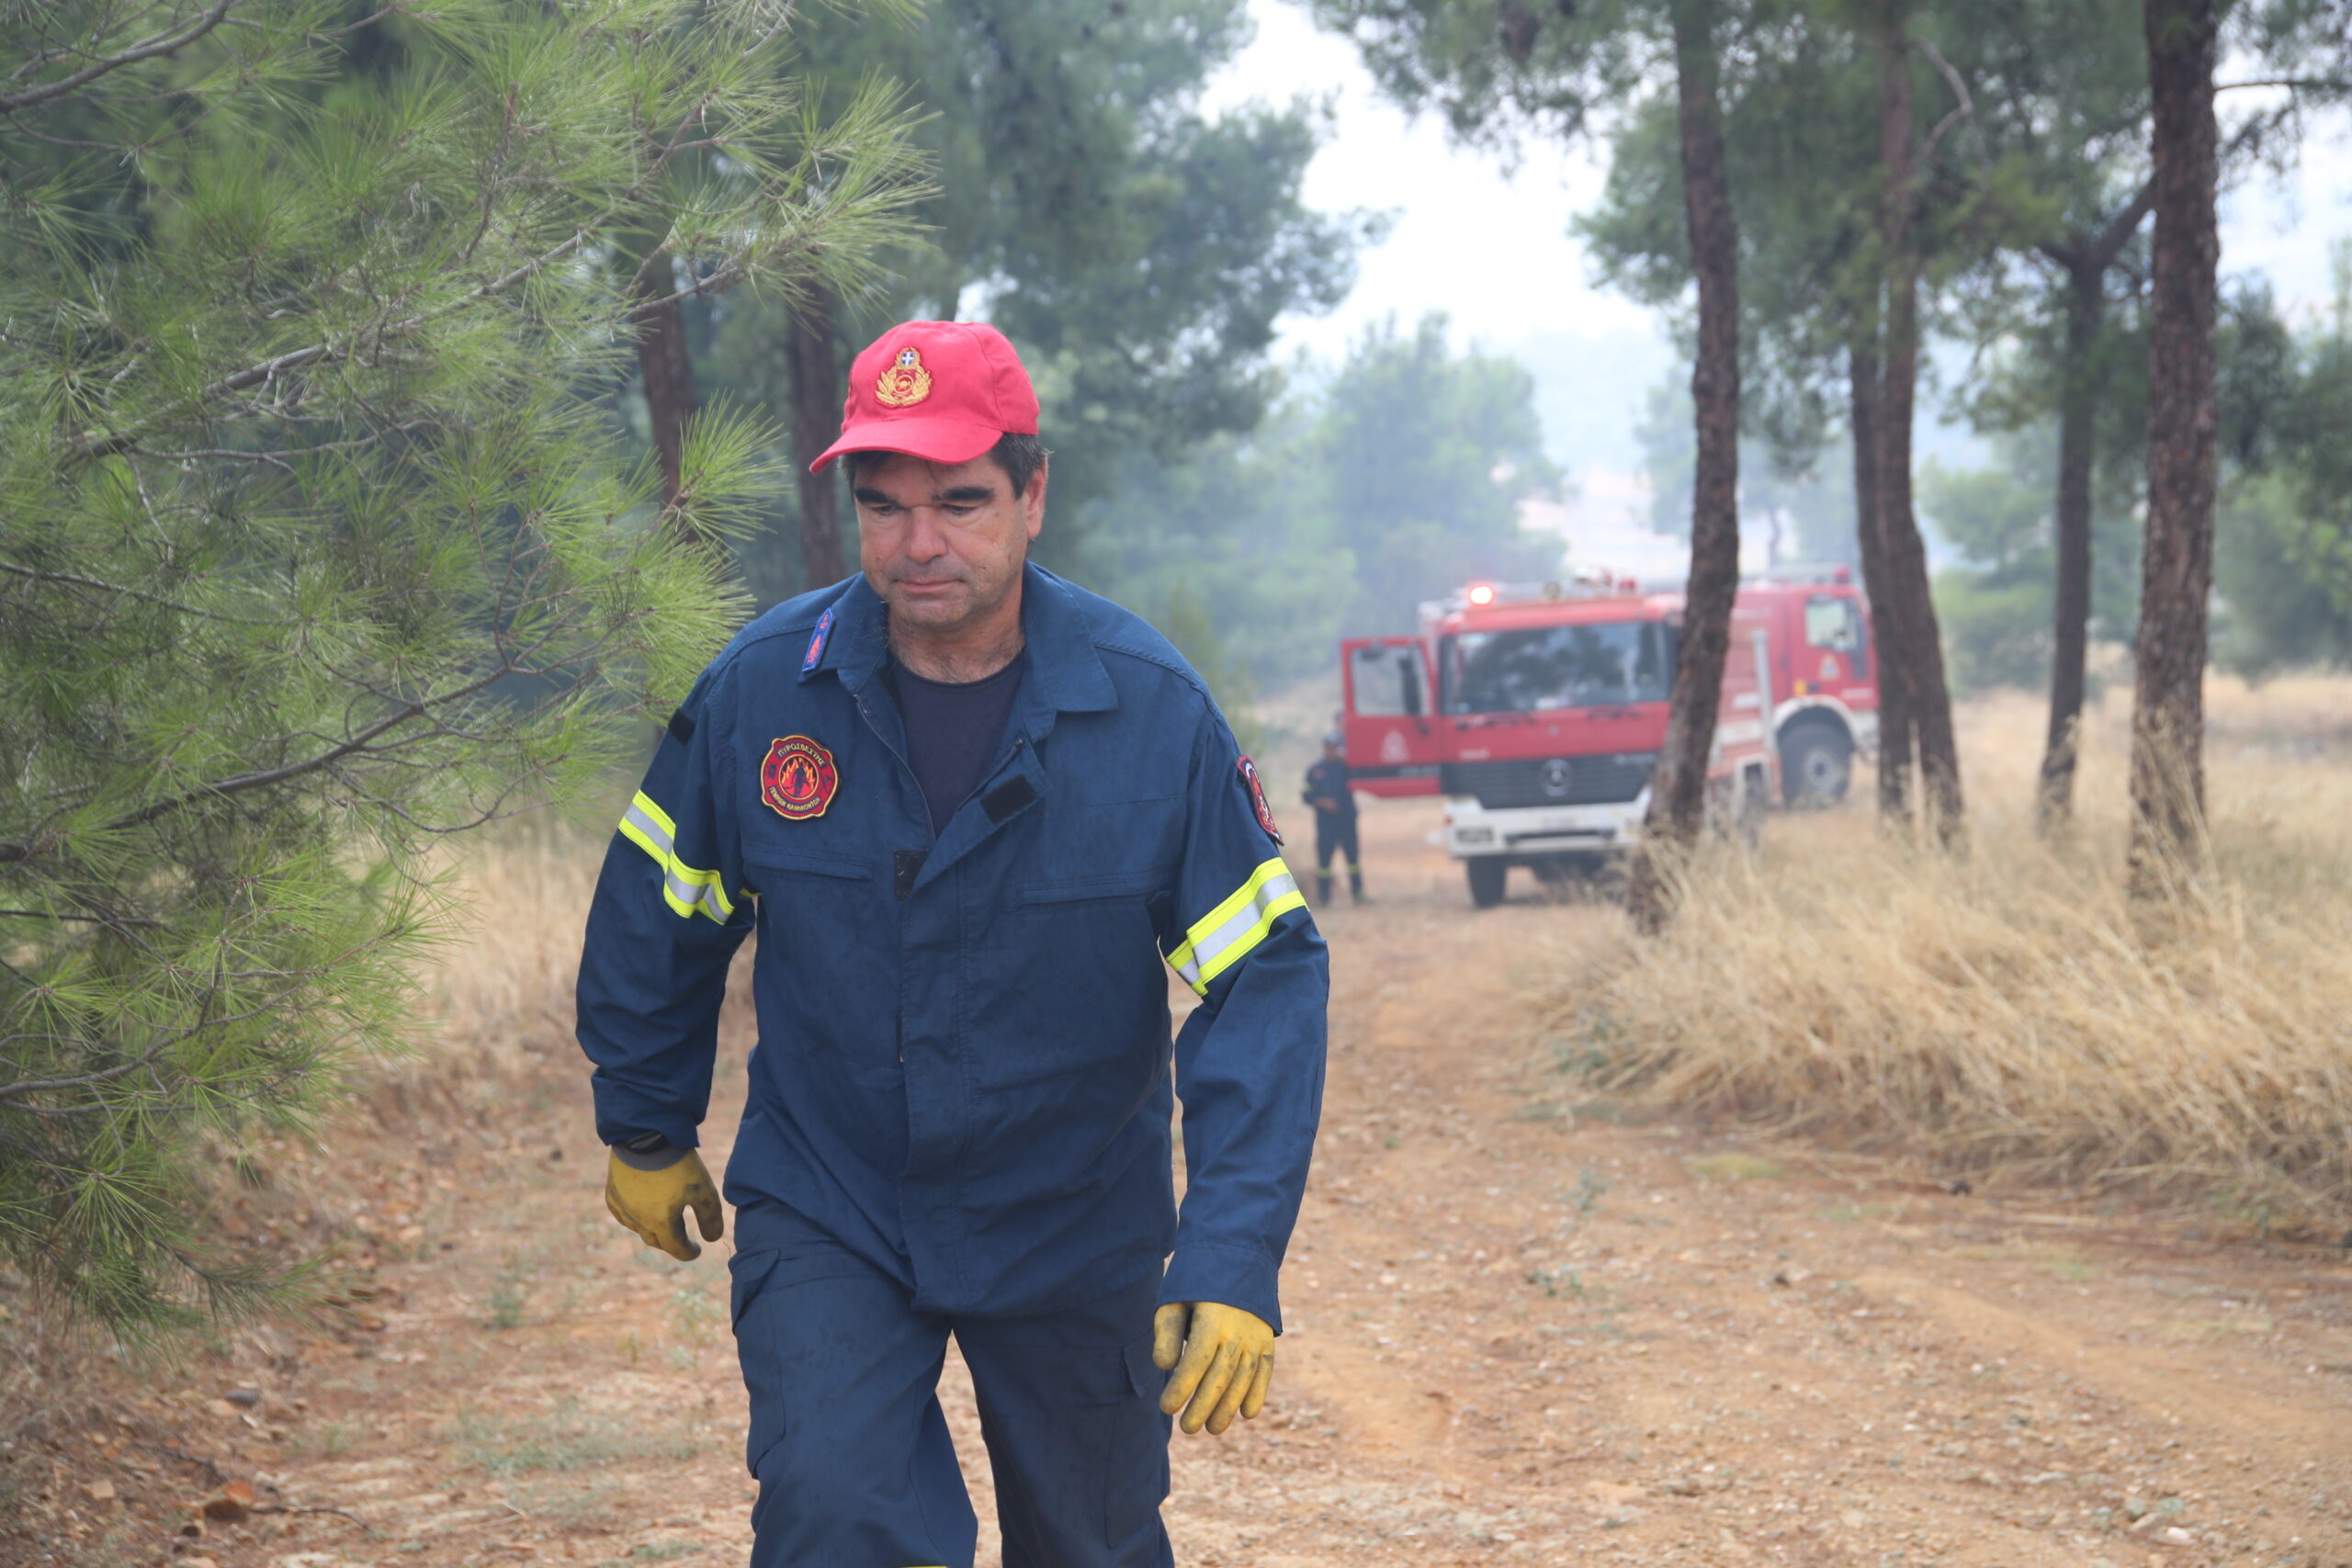 Σε κατάσταση συναγερμού την Τετάρτη η Περιφέρεια Θεσσαλίας – Κατηγορία κινδύνου 5 για πυρκαγιές